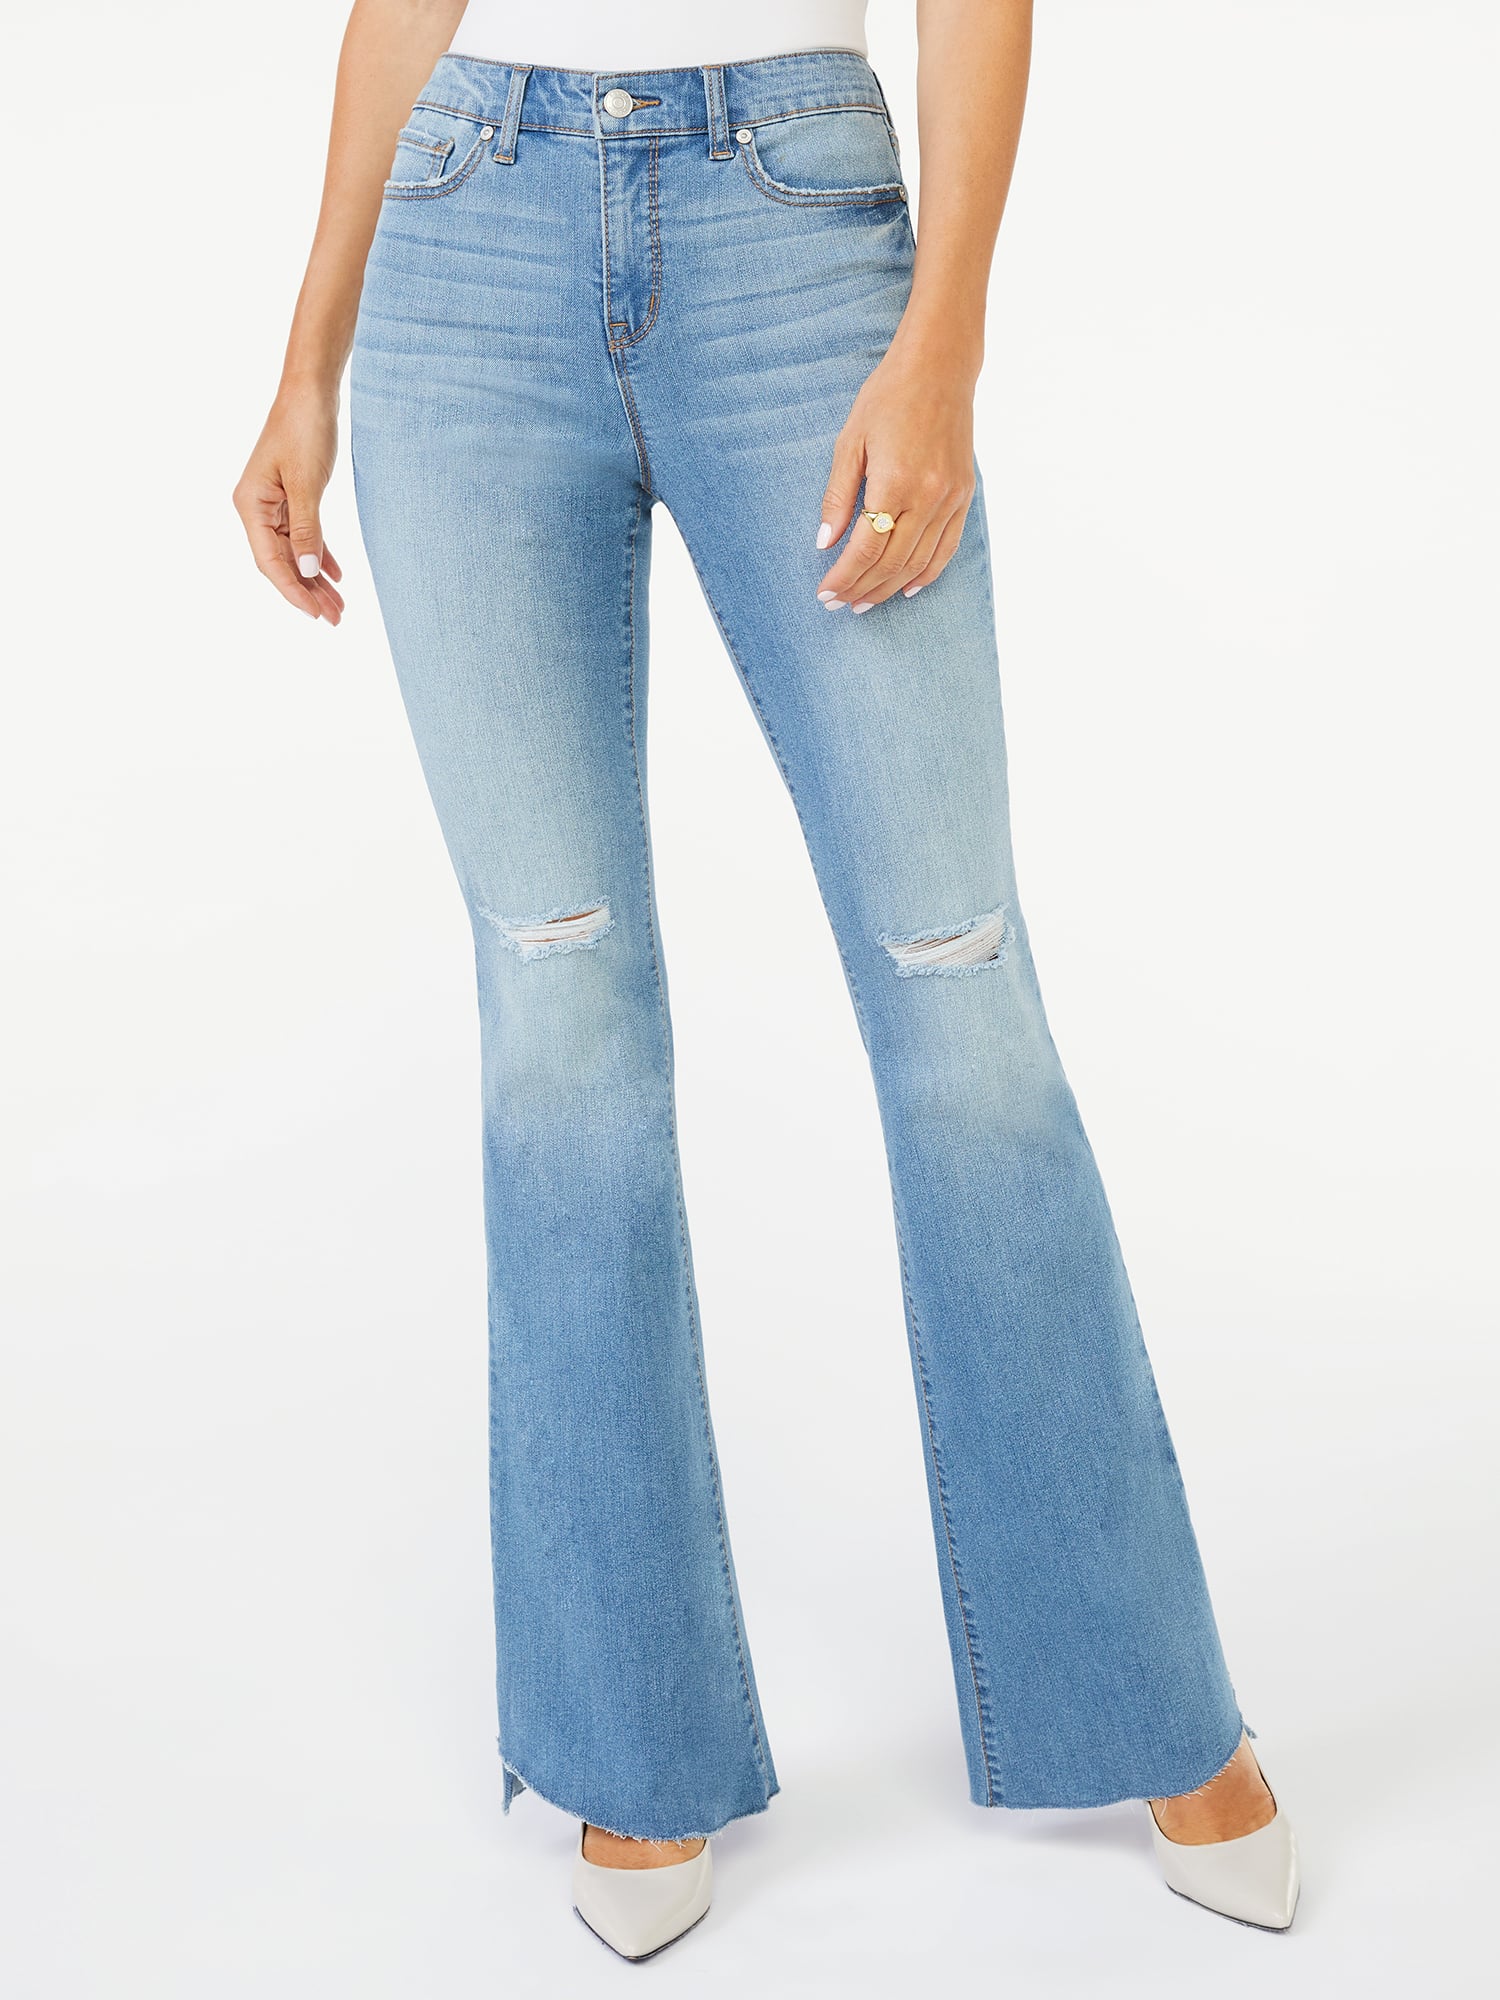 The Best Women's Jeans From Walmart in 2021